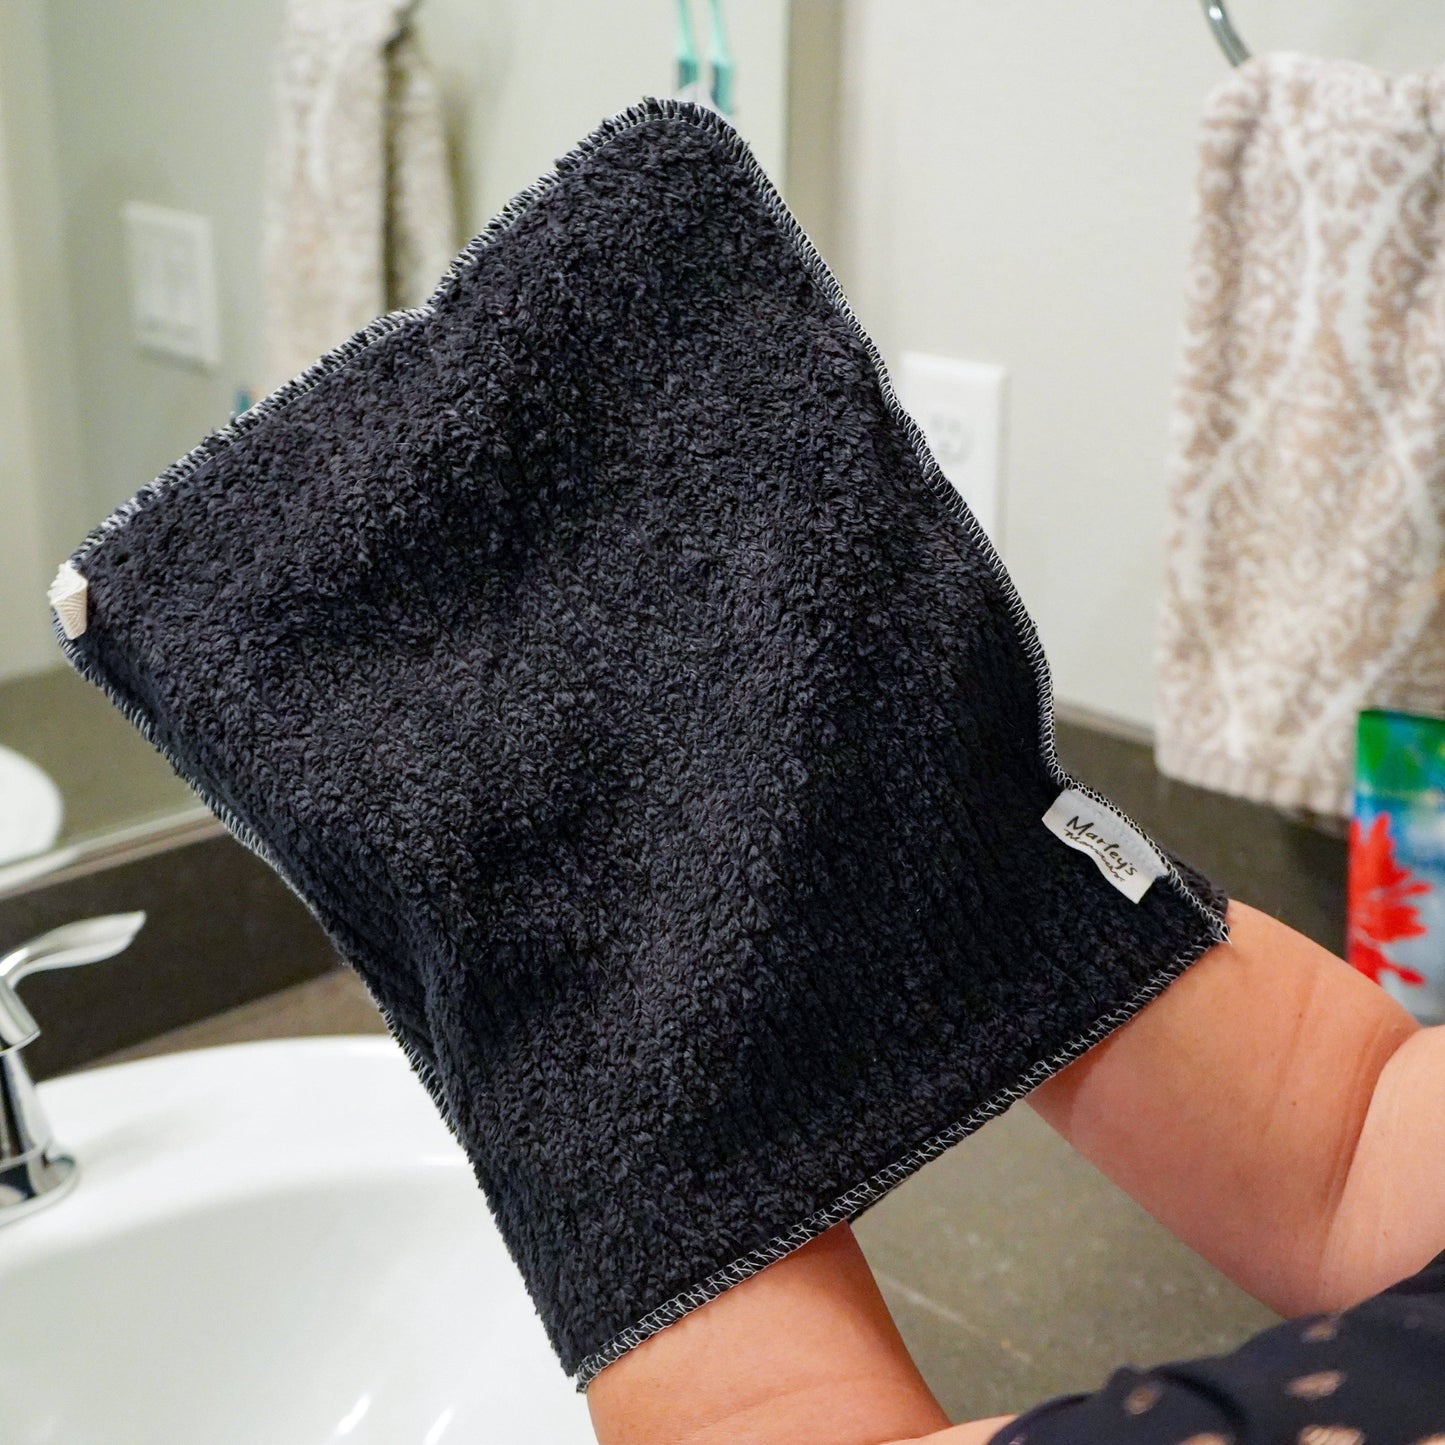 Reusable Makeup Towel - Black Cotton Chenille